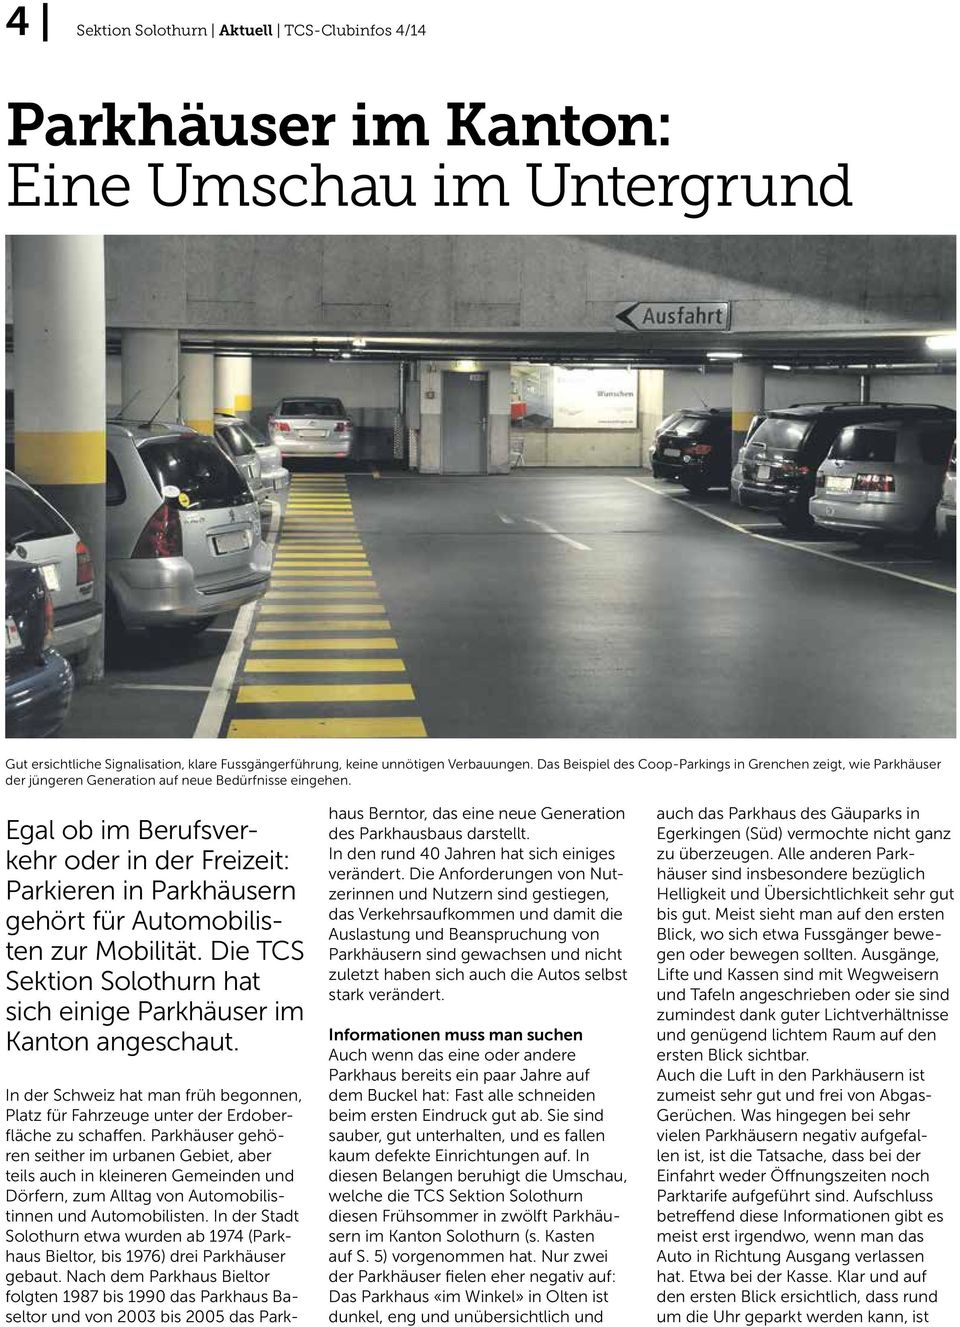 Egal ob im Berufsverkehr oder in der Freizeit: Parkieren in Parkhäusern gehört für Automobilisten zur Mobilität. Die TCS Sektion Solothurn hat sich einige Parkhäuser im Kanton angeschaut.